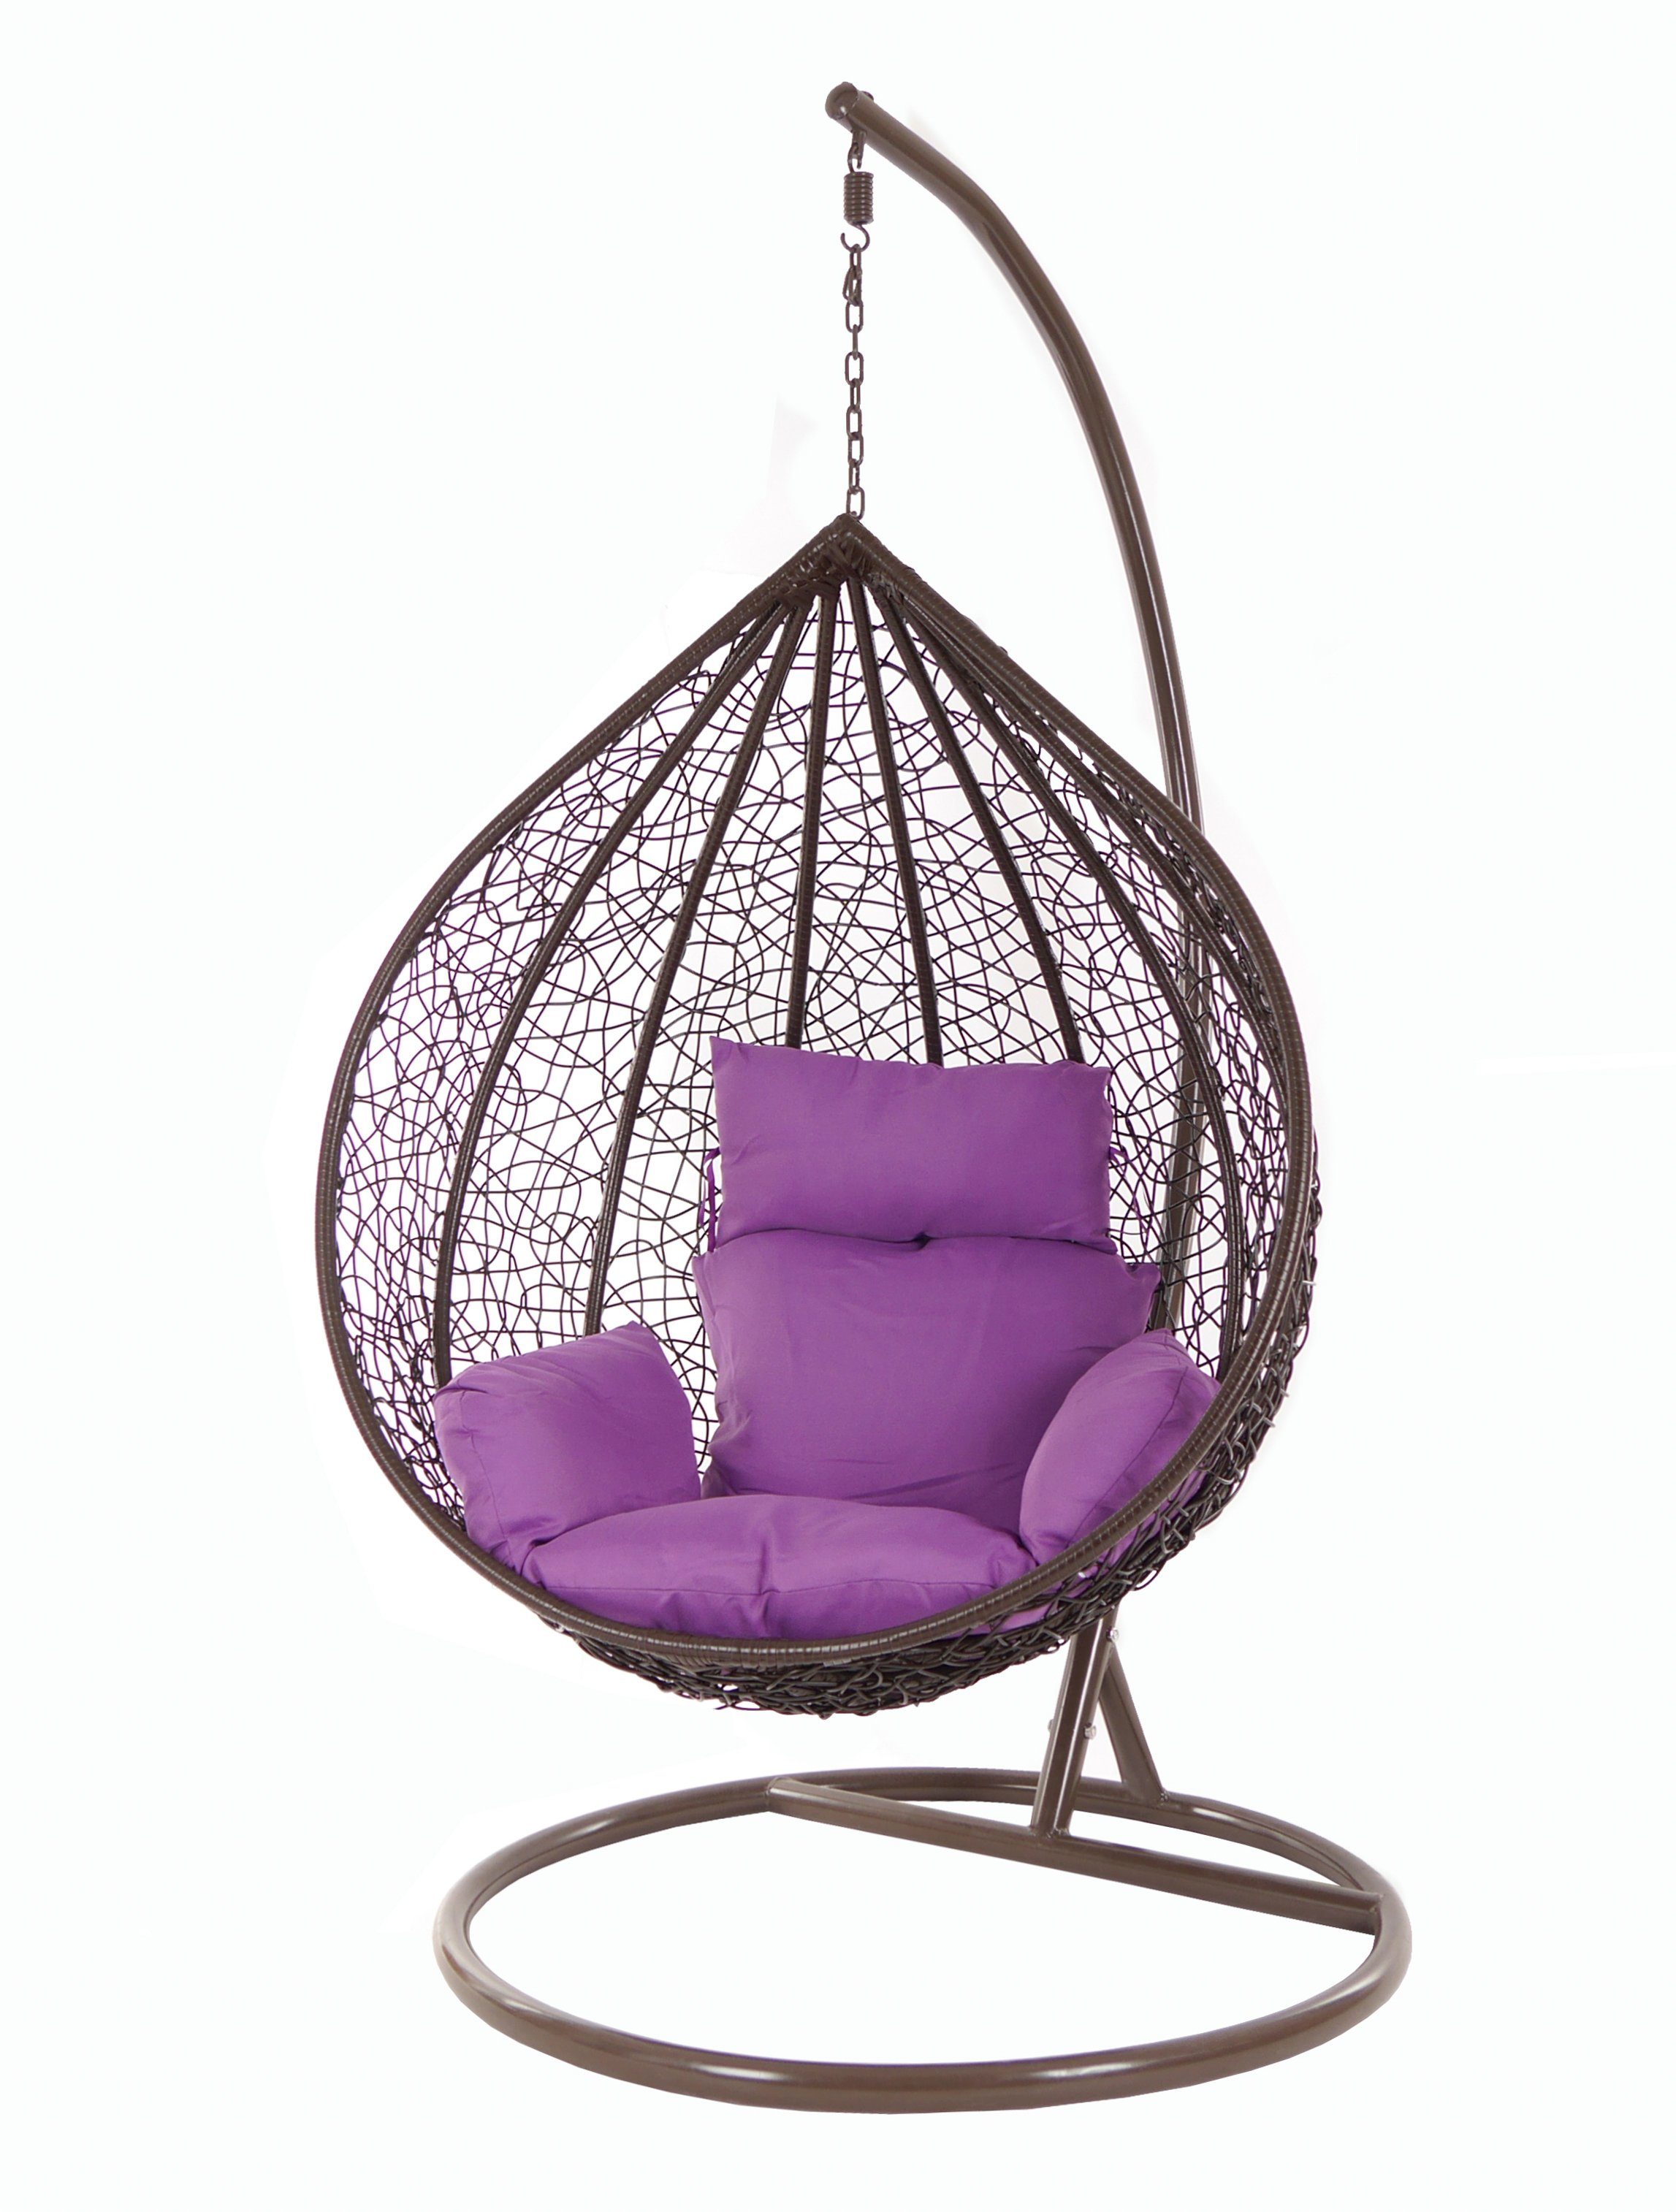 lila und Chair, Gestell Hängesessel MANACOR violet) Hängesessel Kissen Swing KIDEO Schwebesessel, darkbrown, mit braun, Hängesessel (4050